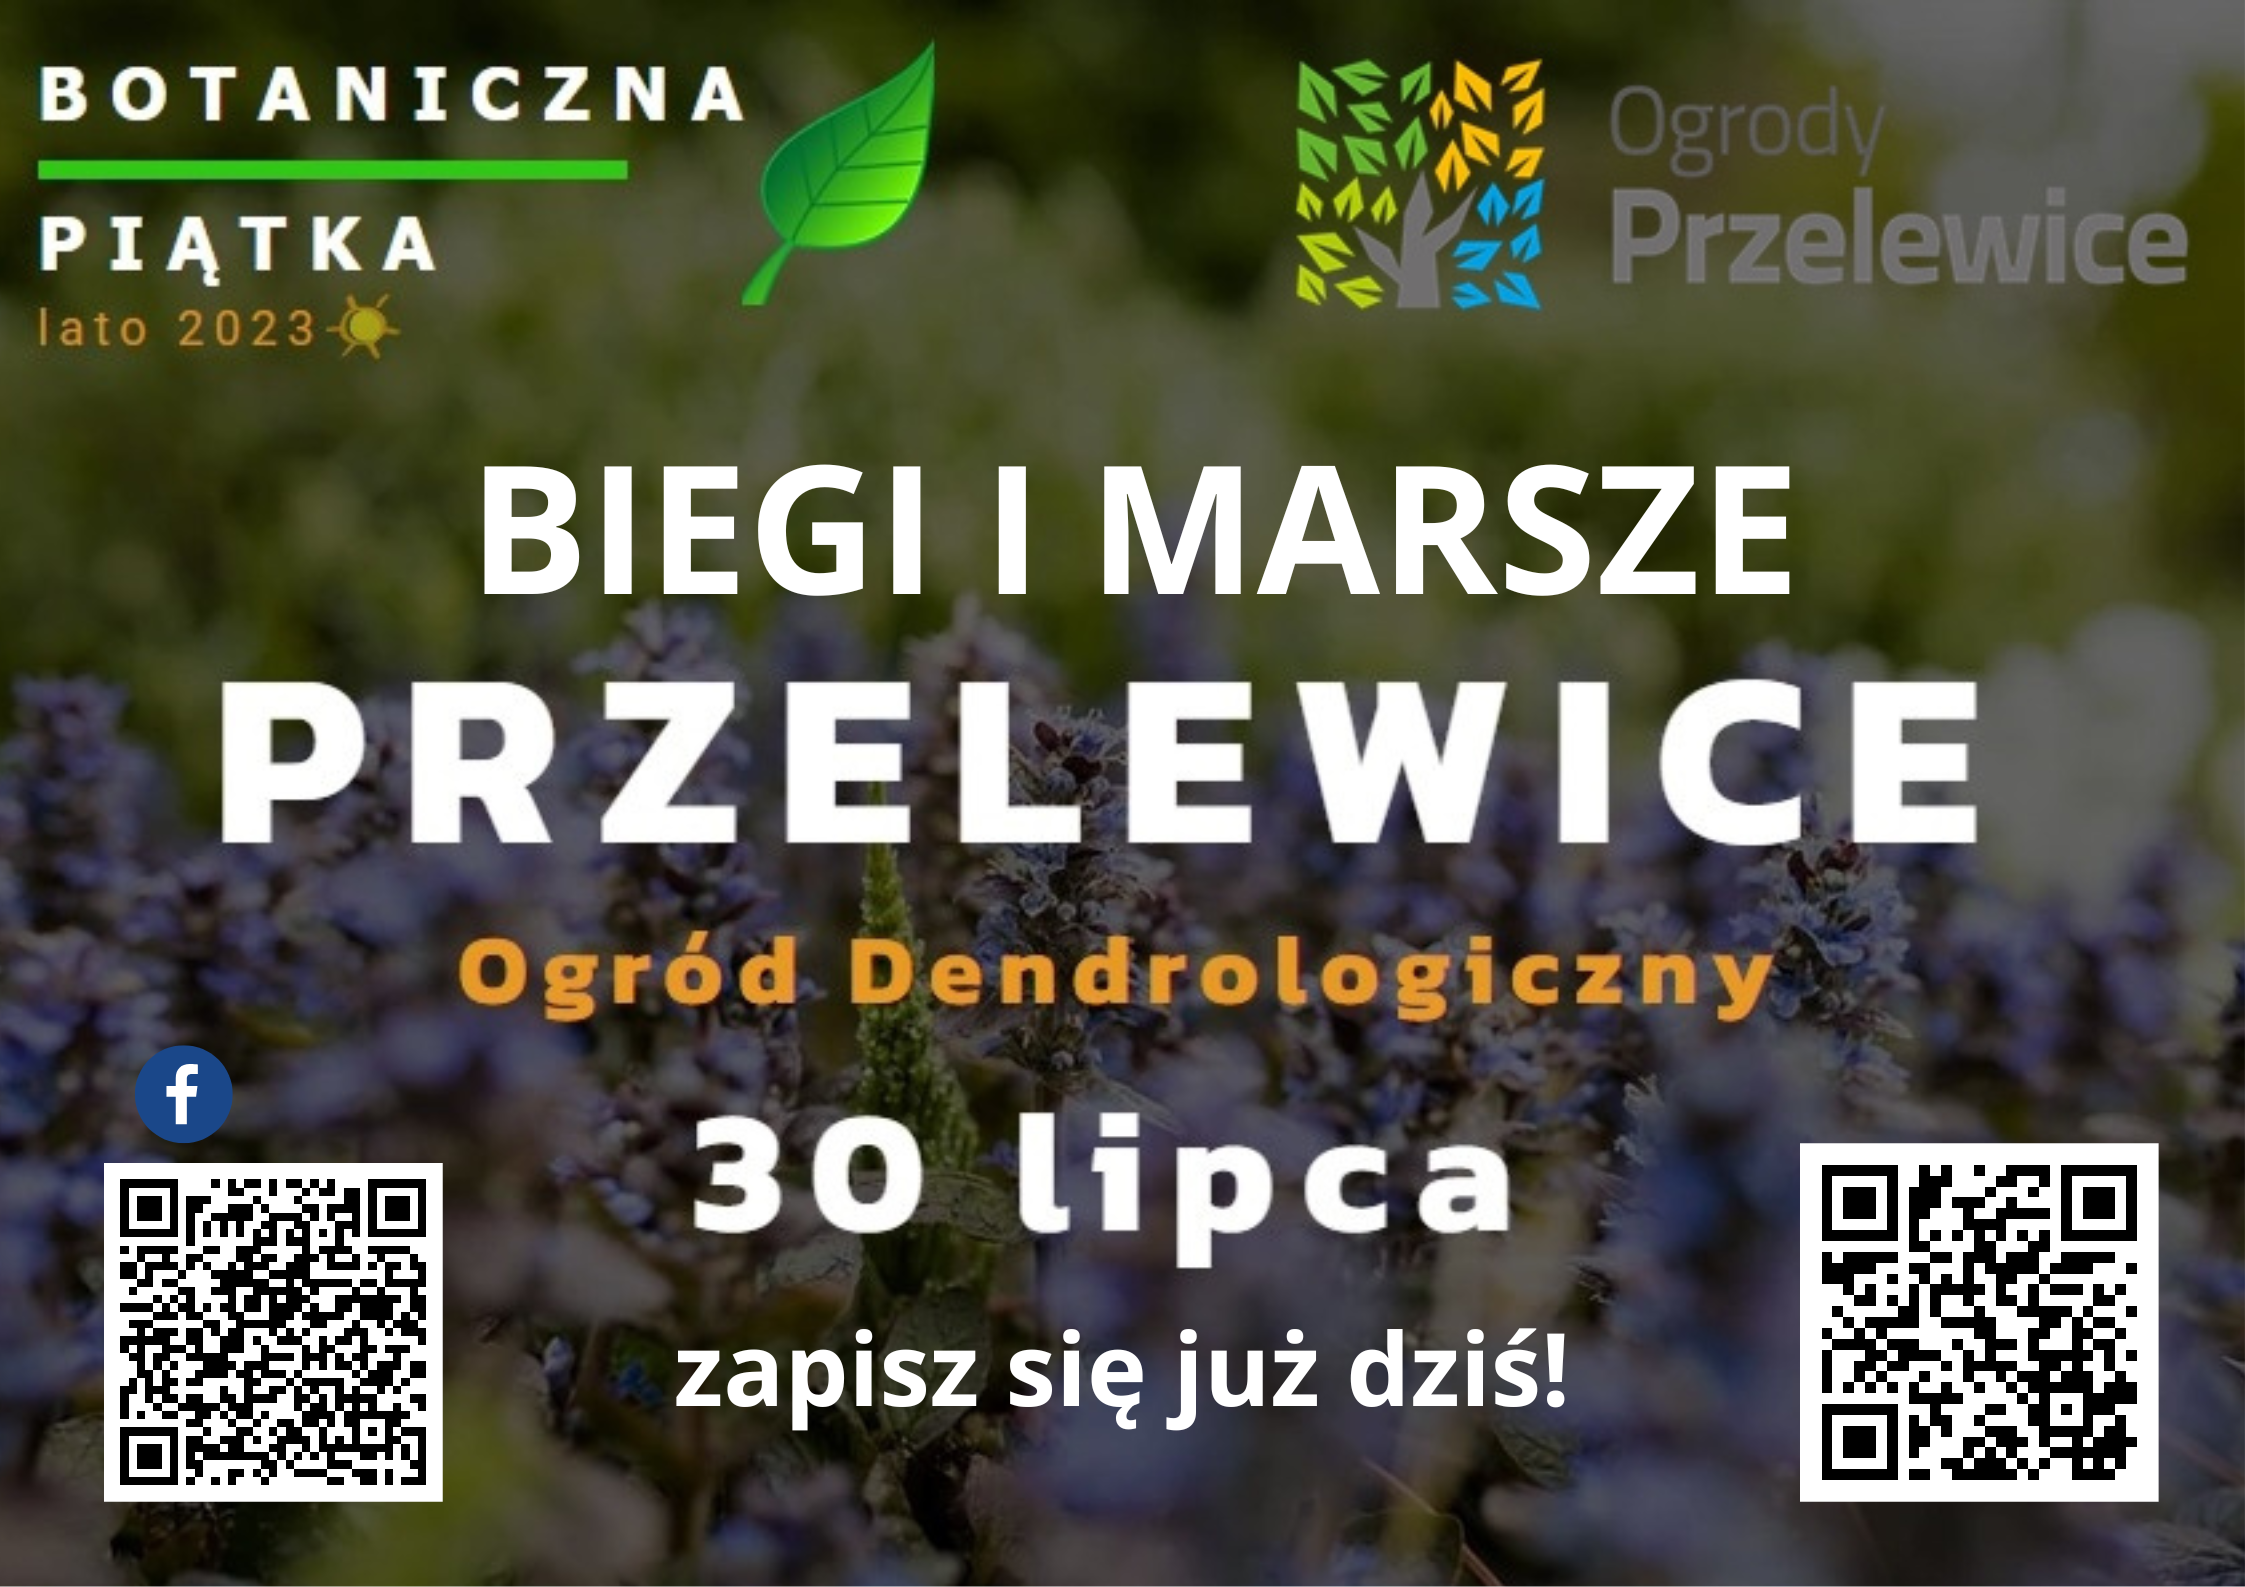 You are currently viewing Przygotuj się na Biegi Botaniczna Piątka w Przelewicach!